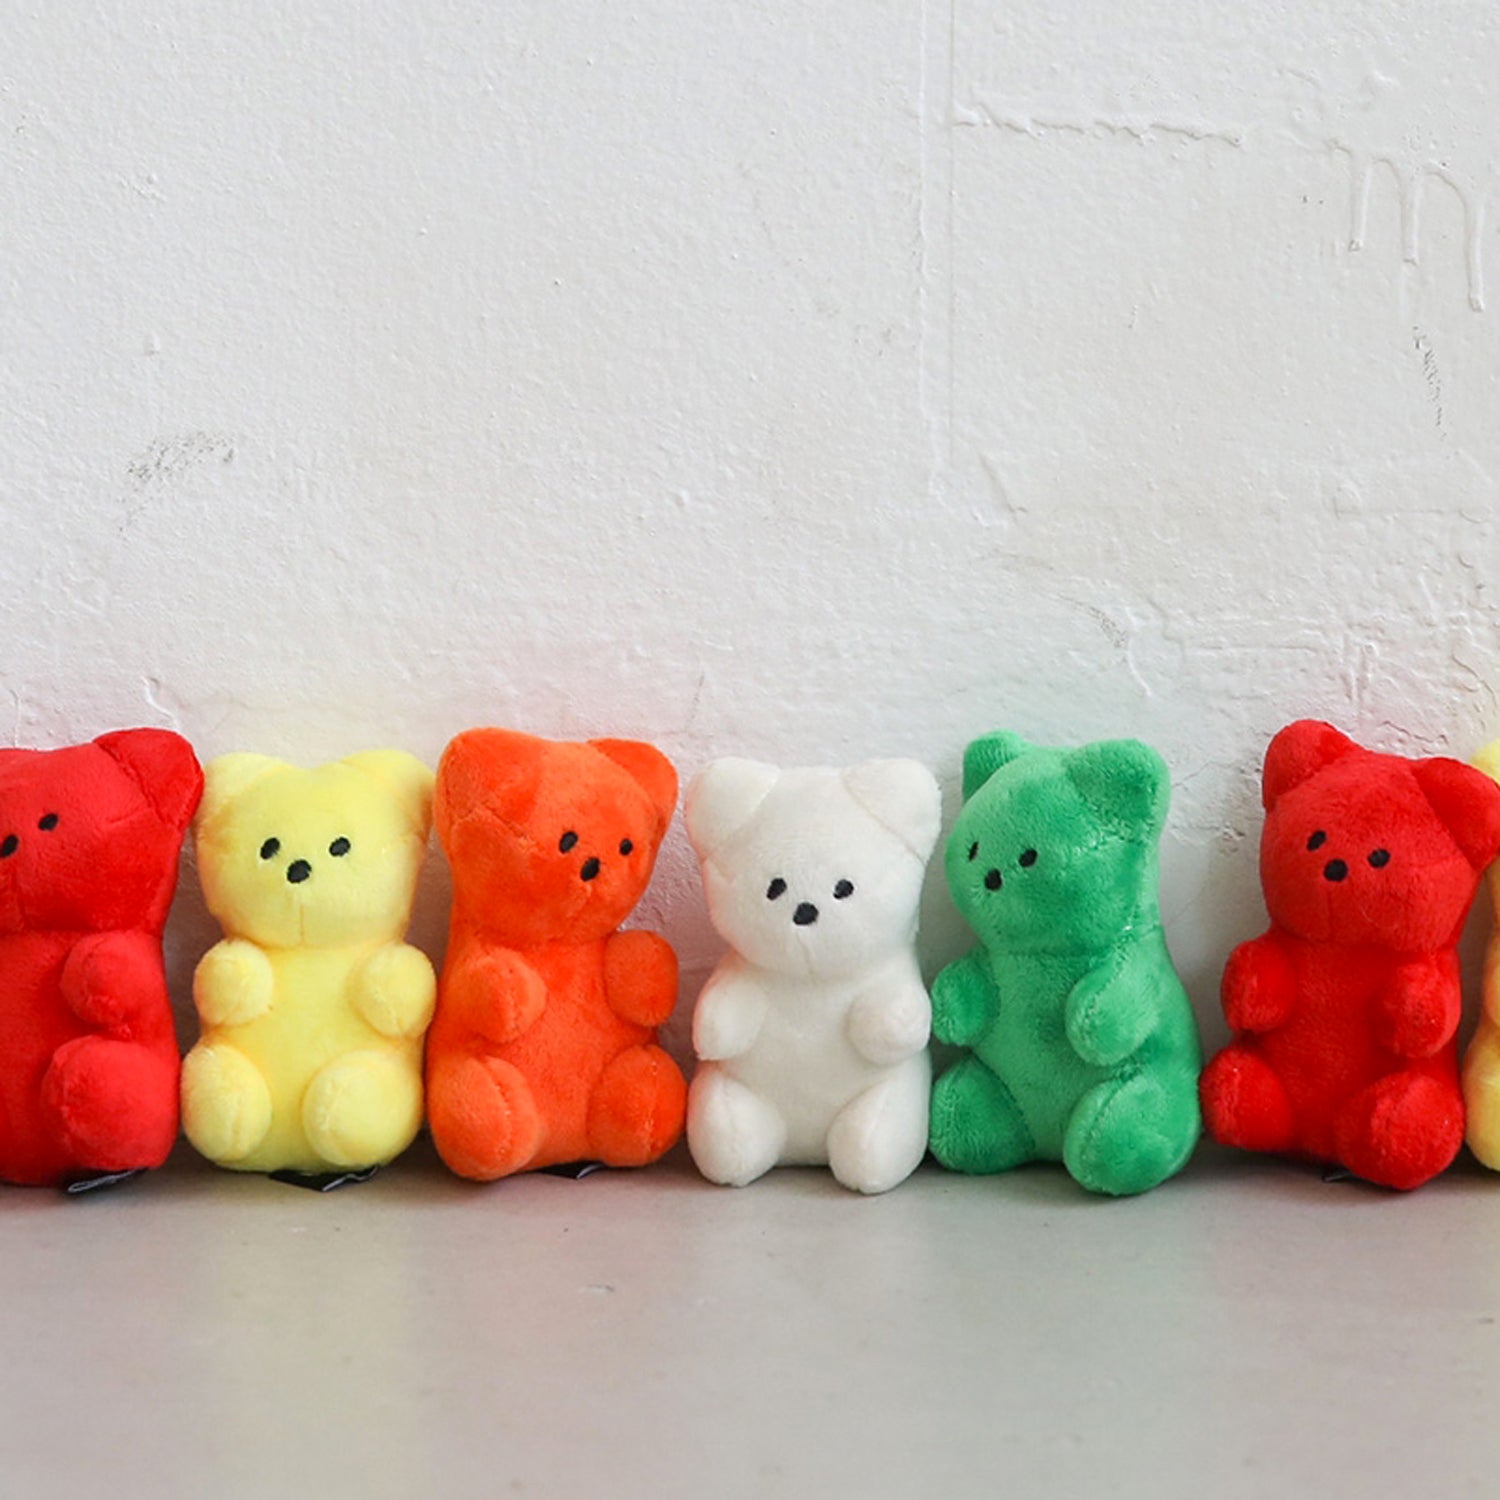 gummy bear stuffed toy